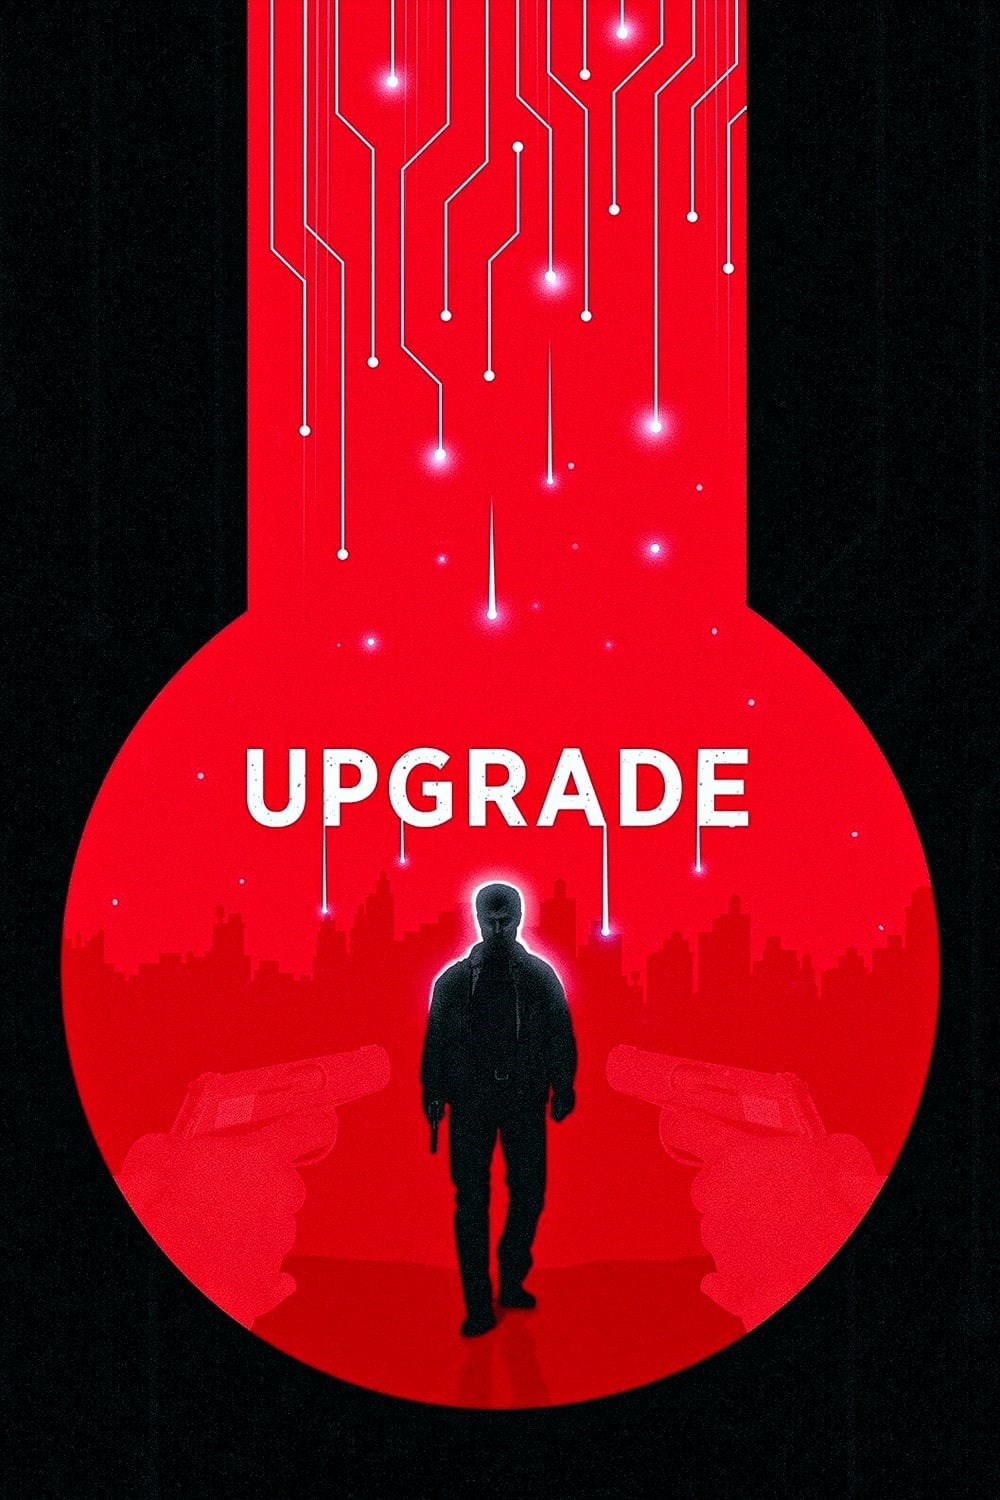  فیلم آپگرید Upgrade 2018